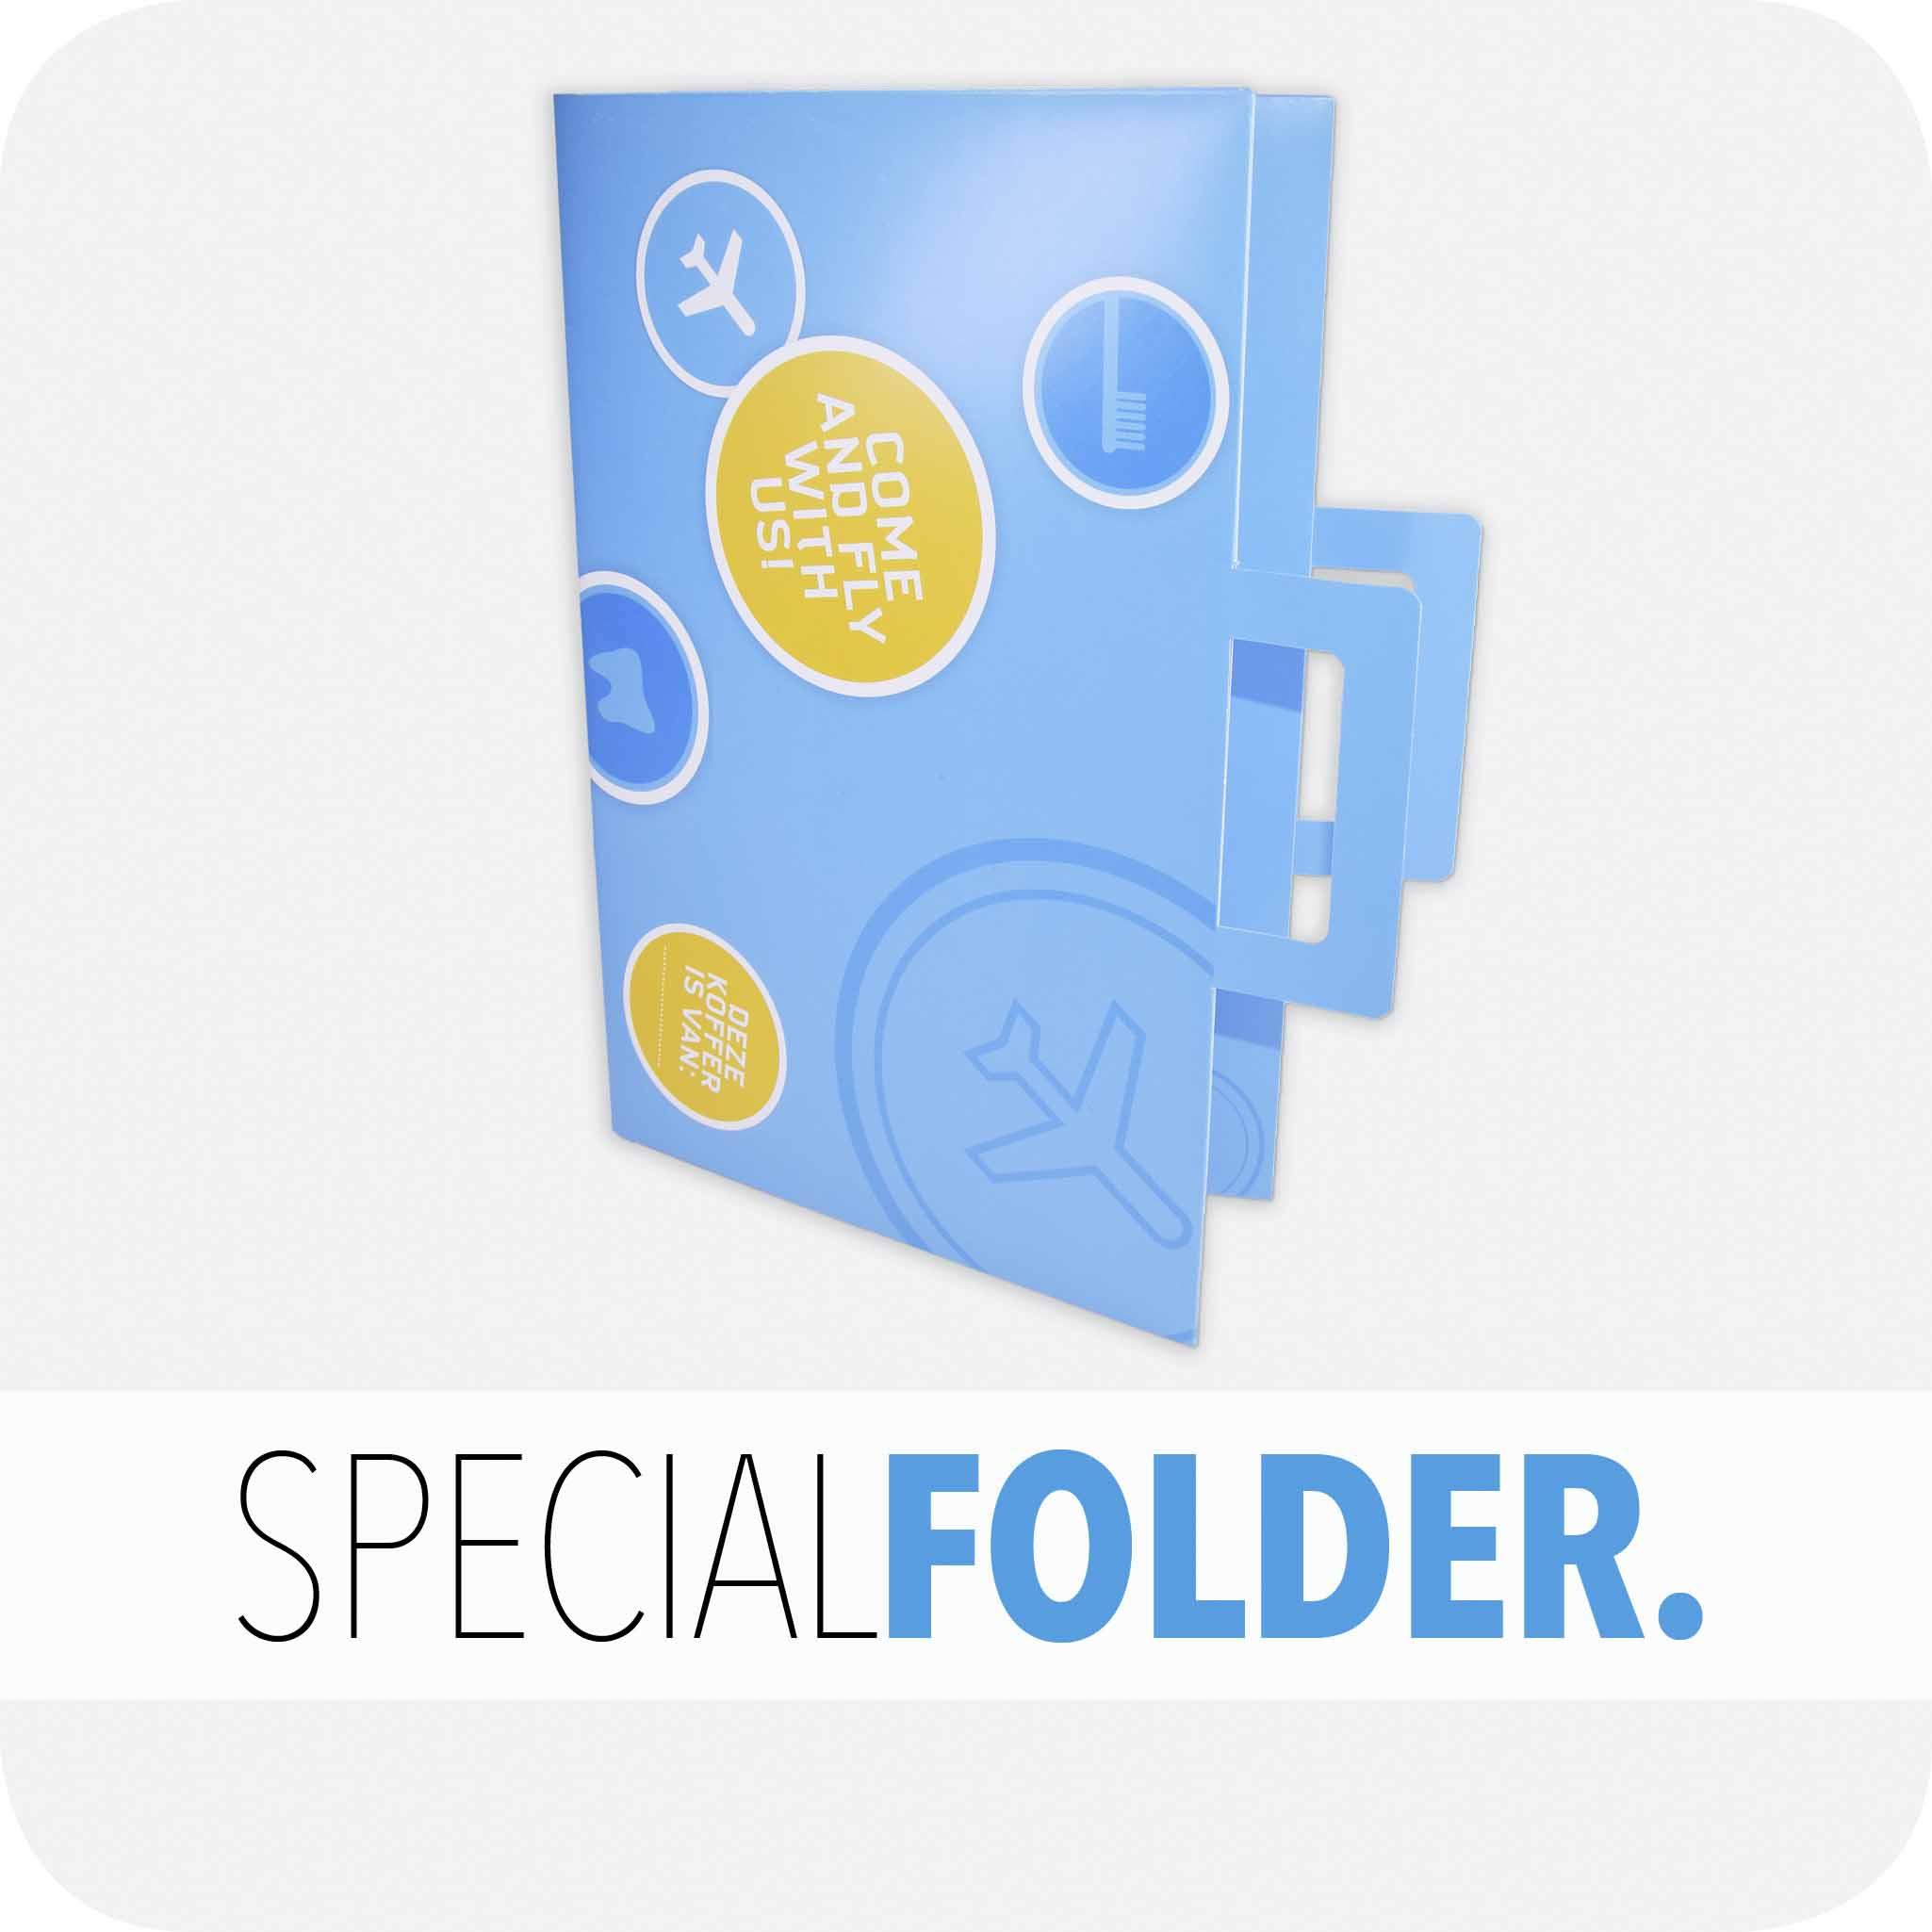 Special folder